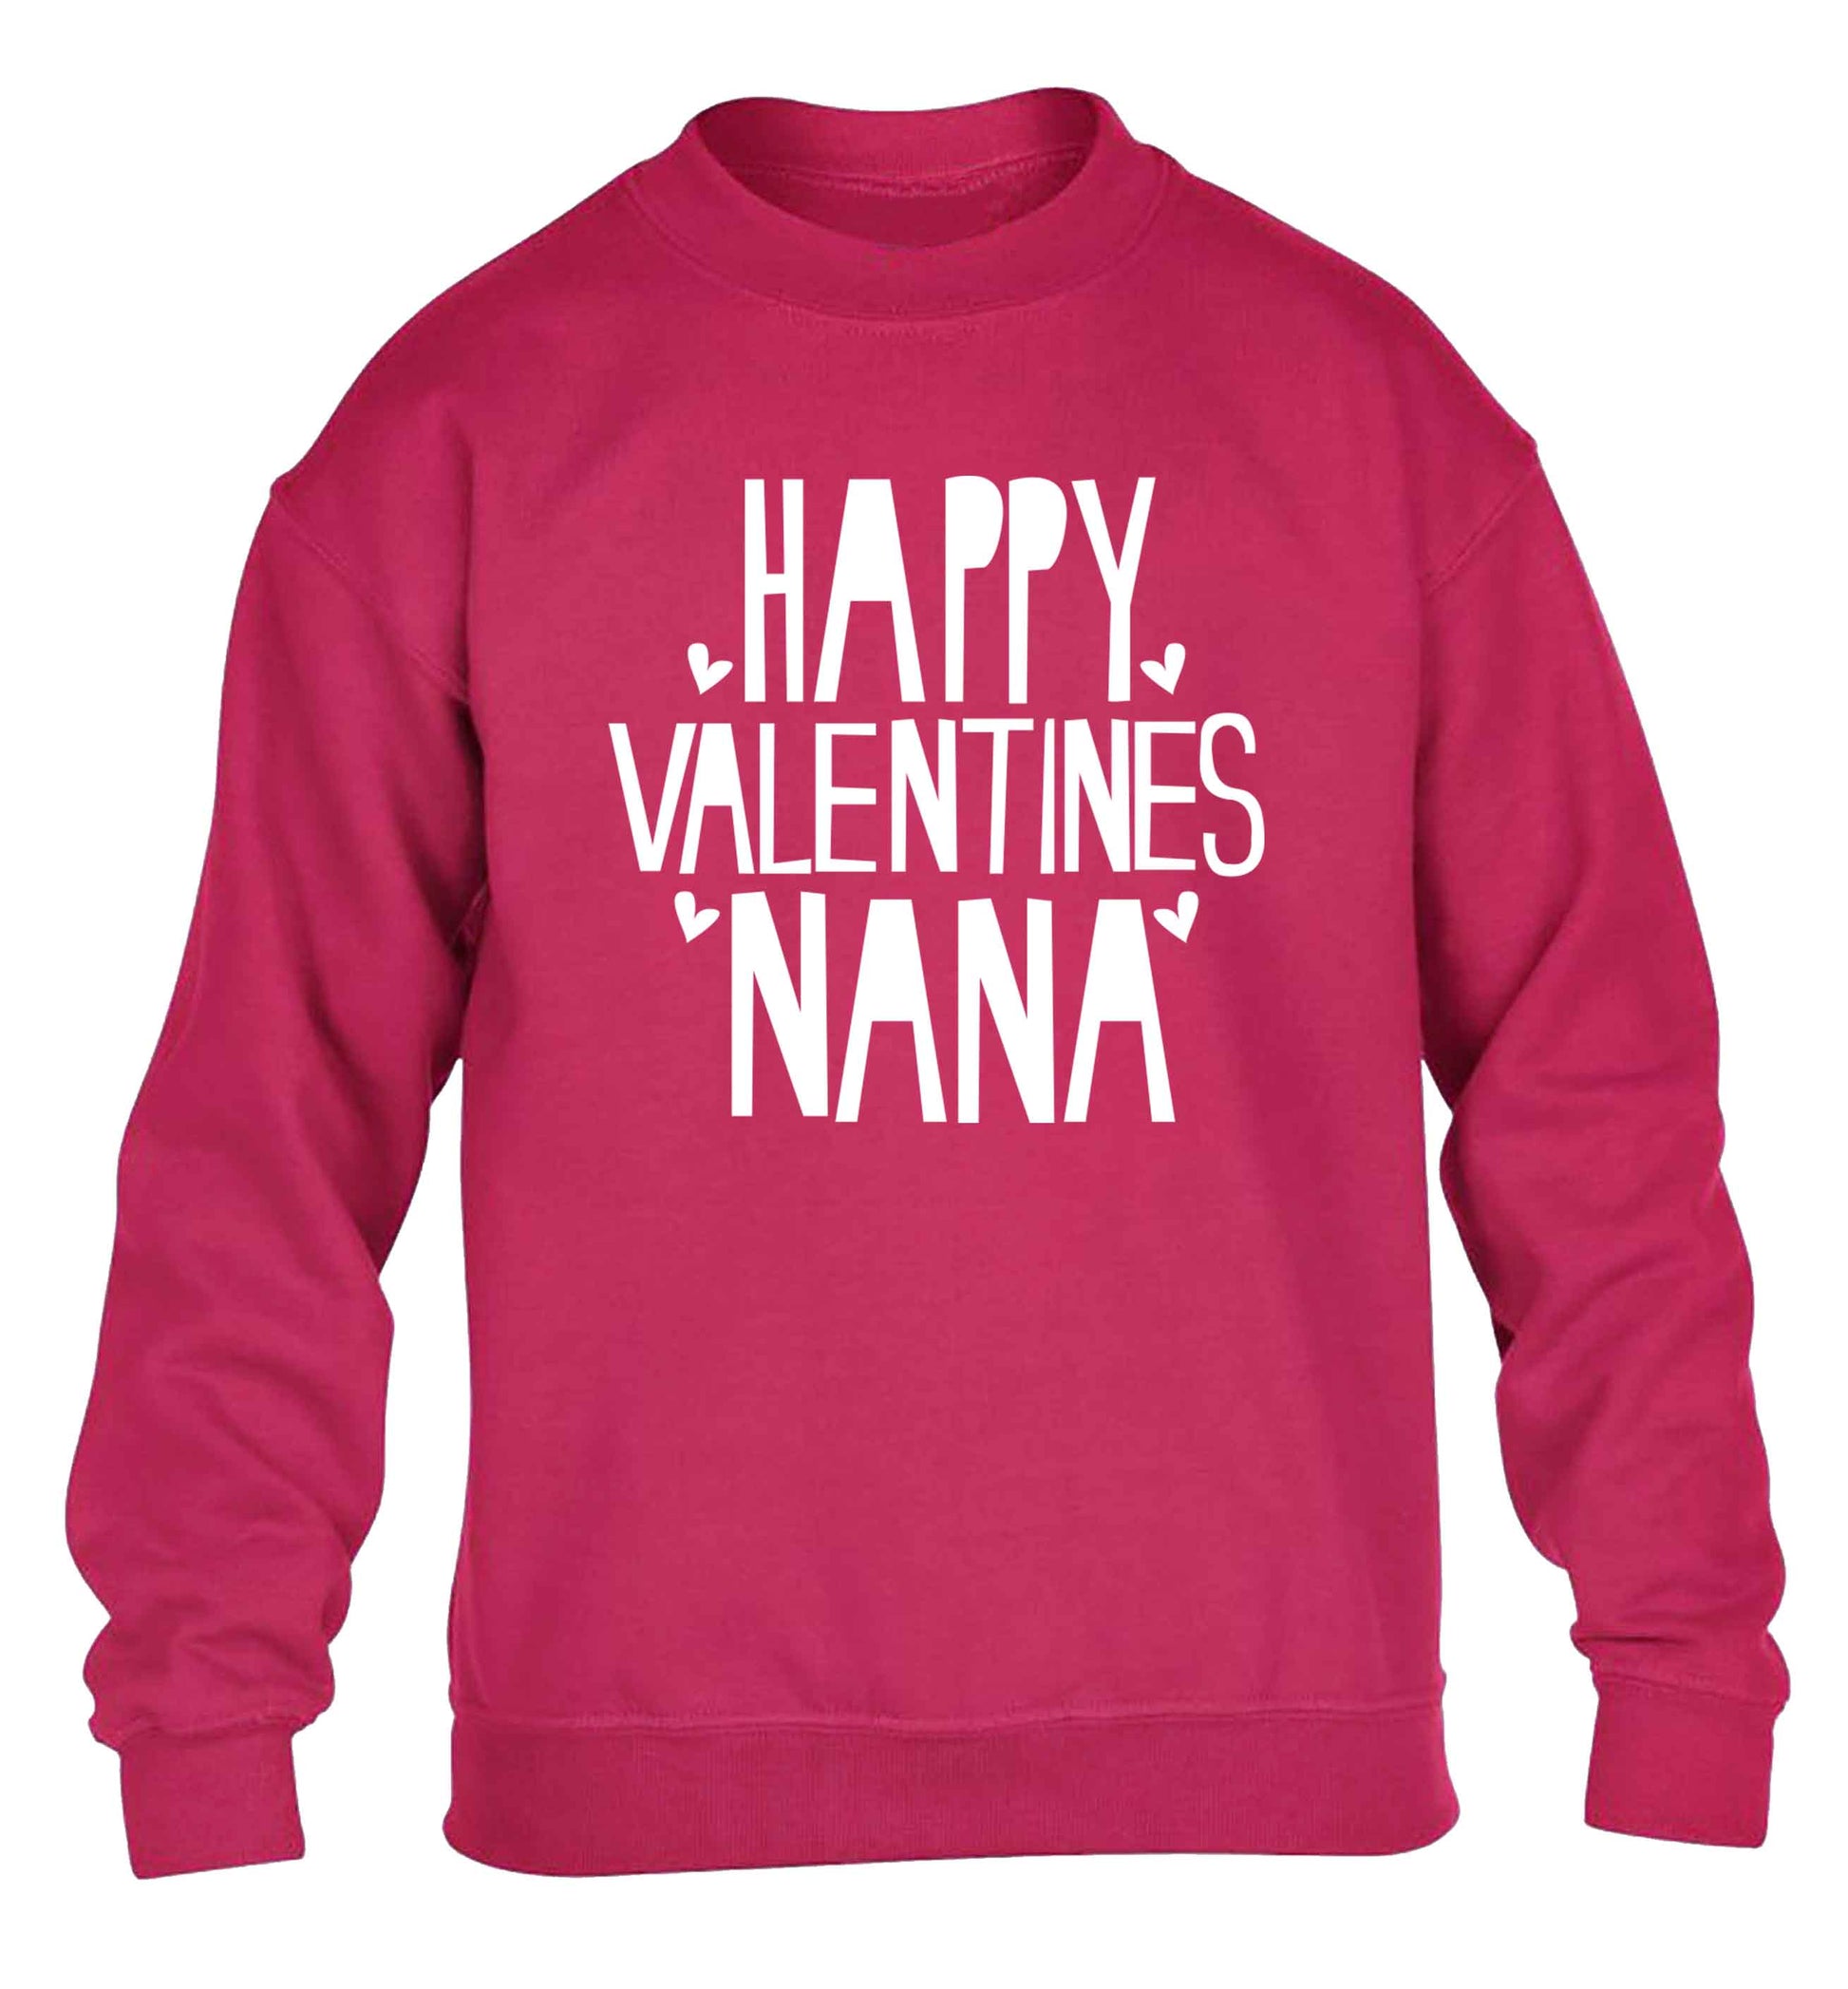 Happy valentines nana children's pink sweater 12-13 Years